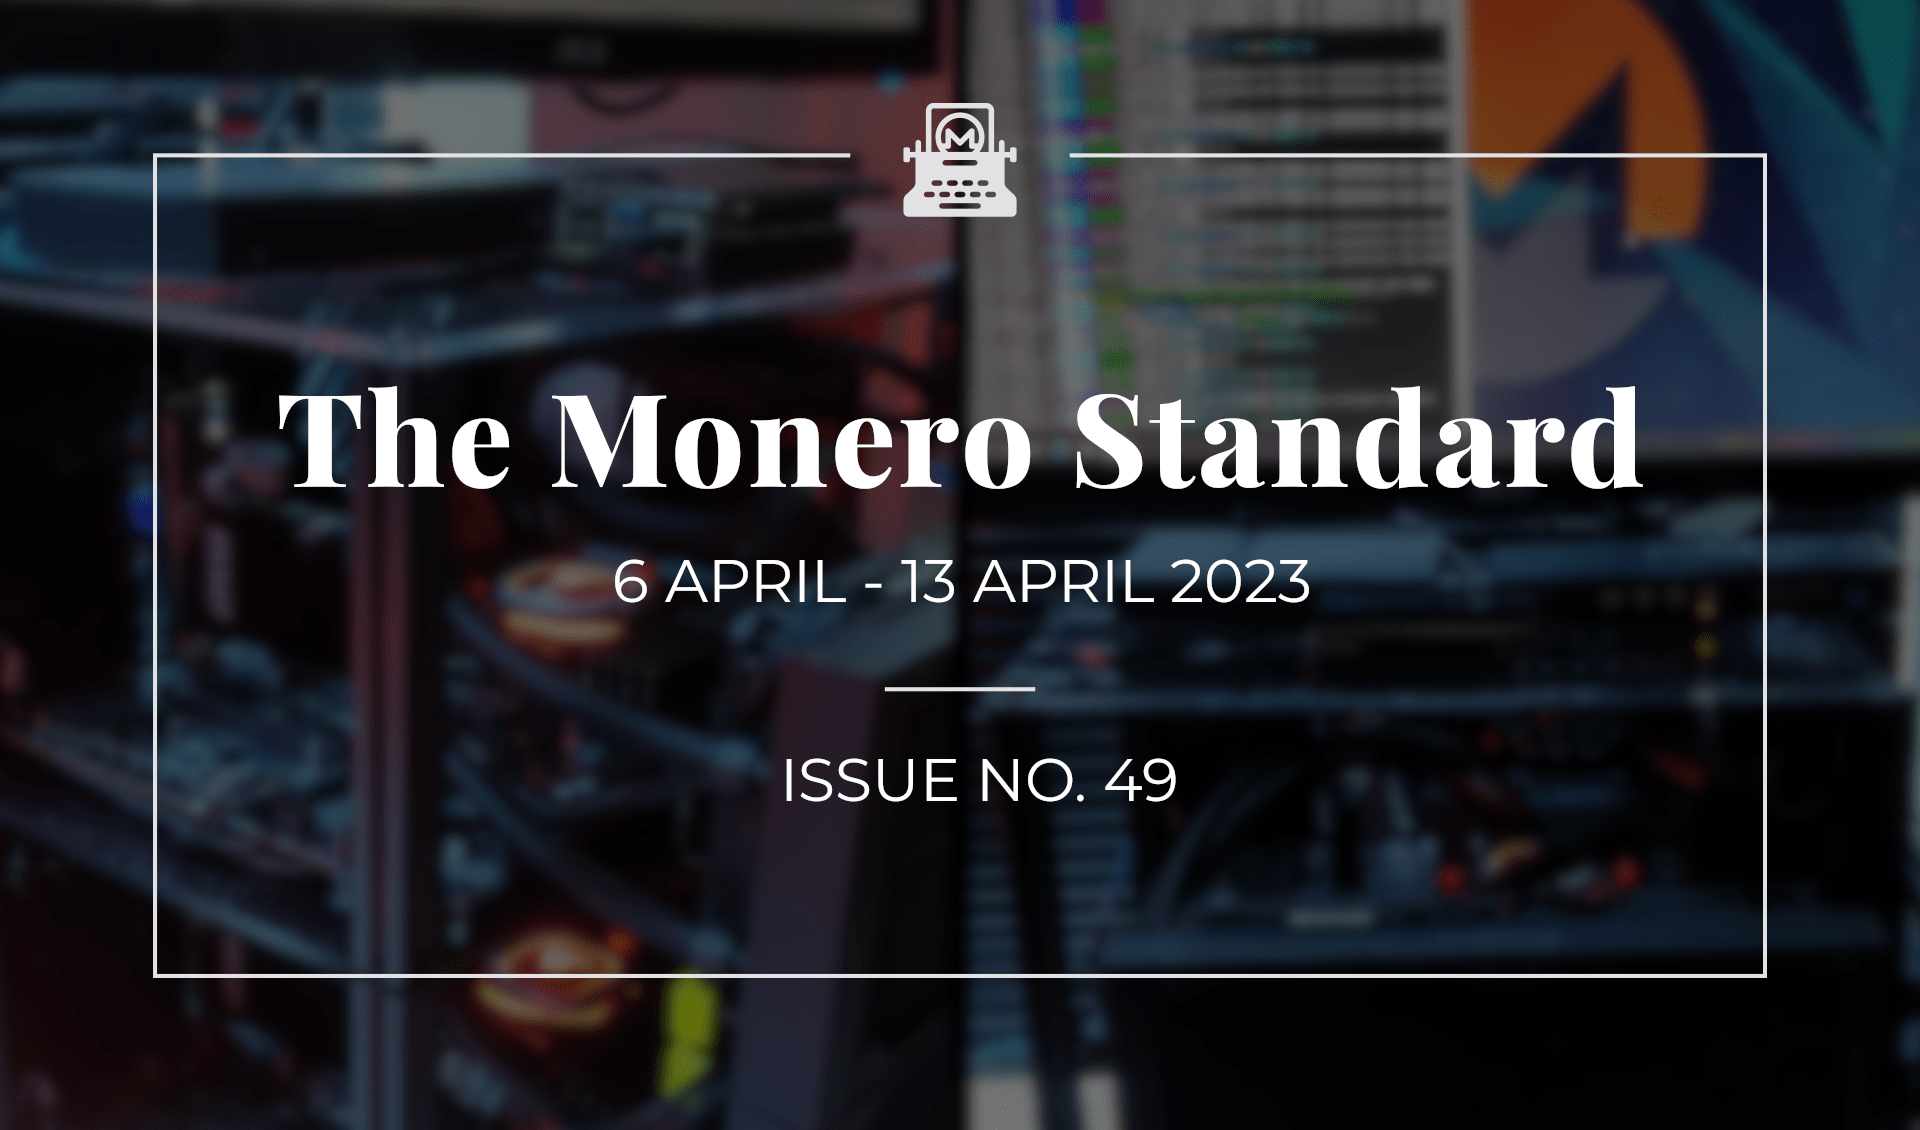 The Monero Standard #49: 6 March 2023 - 13 April 2023